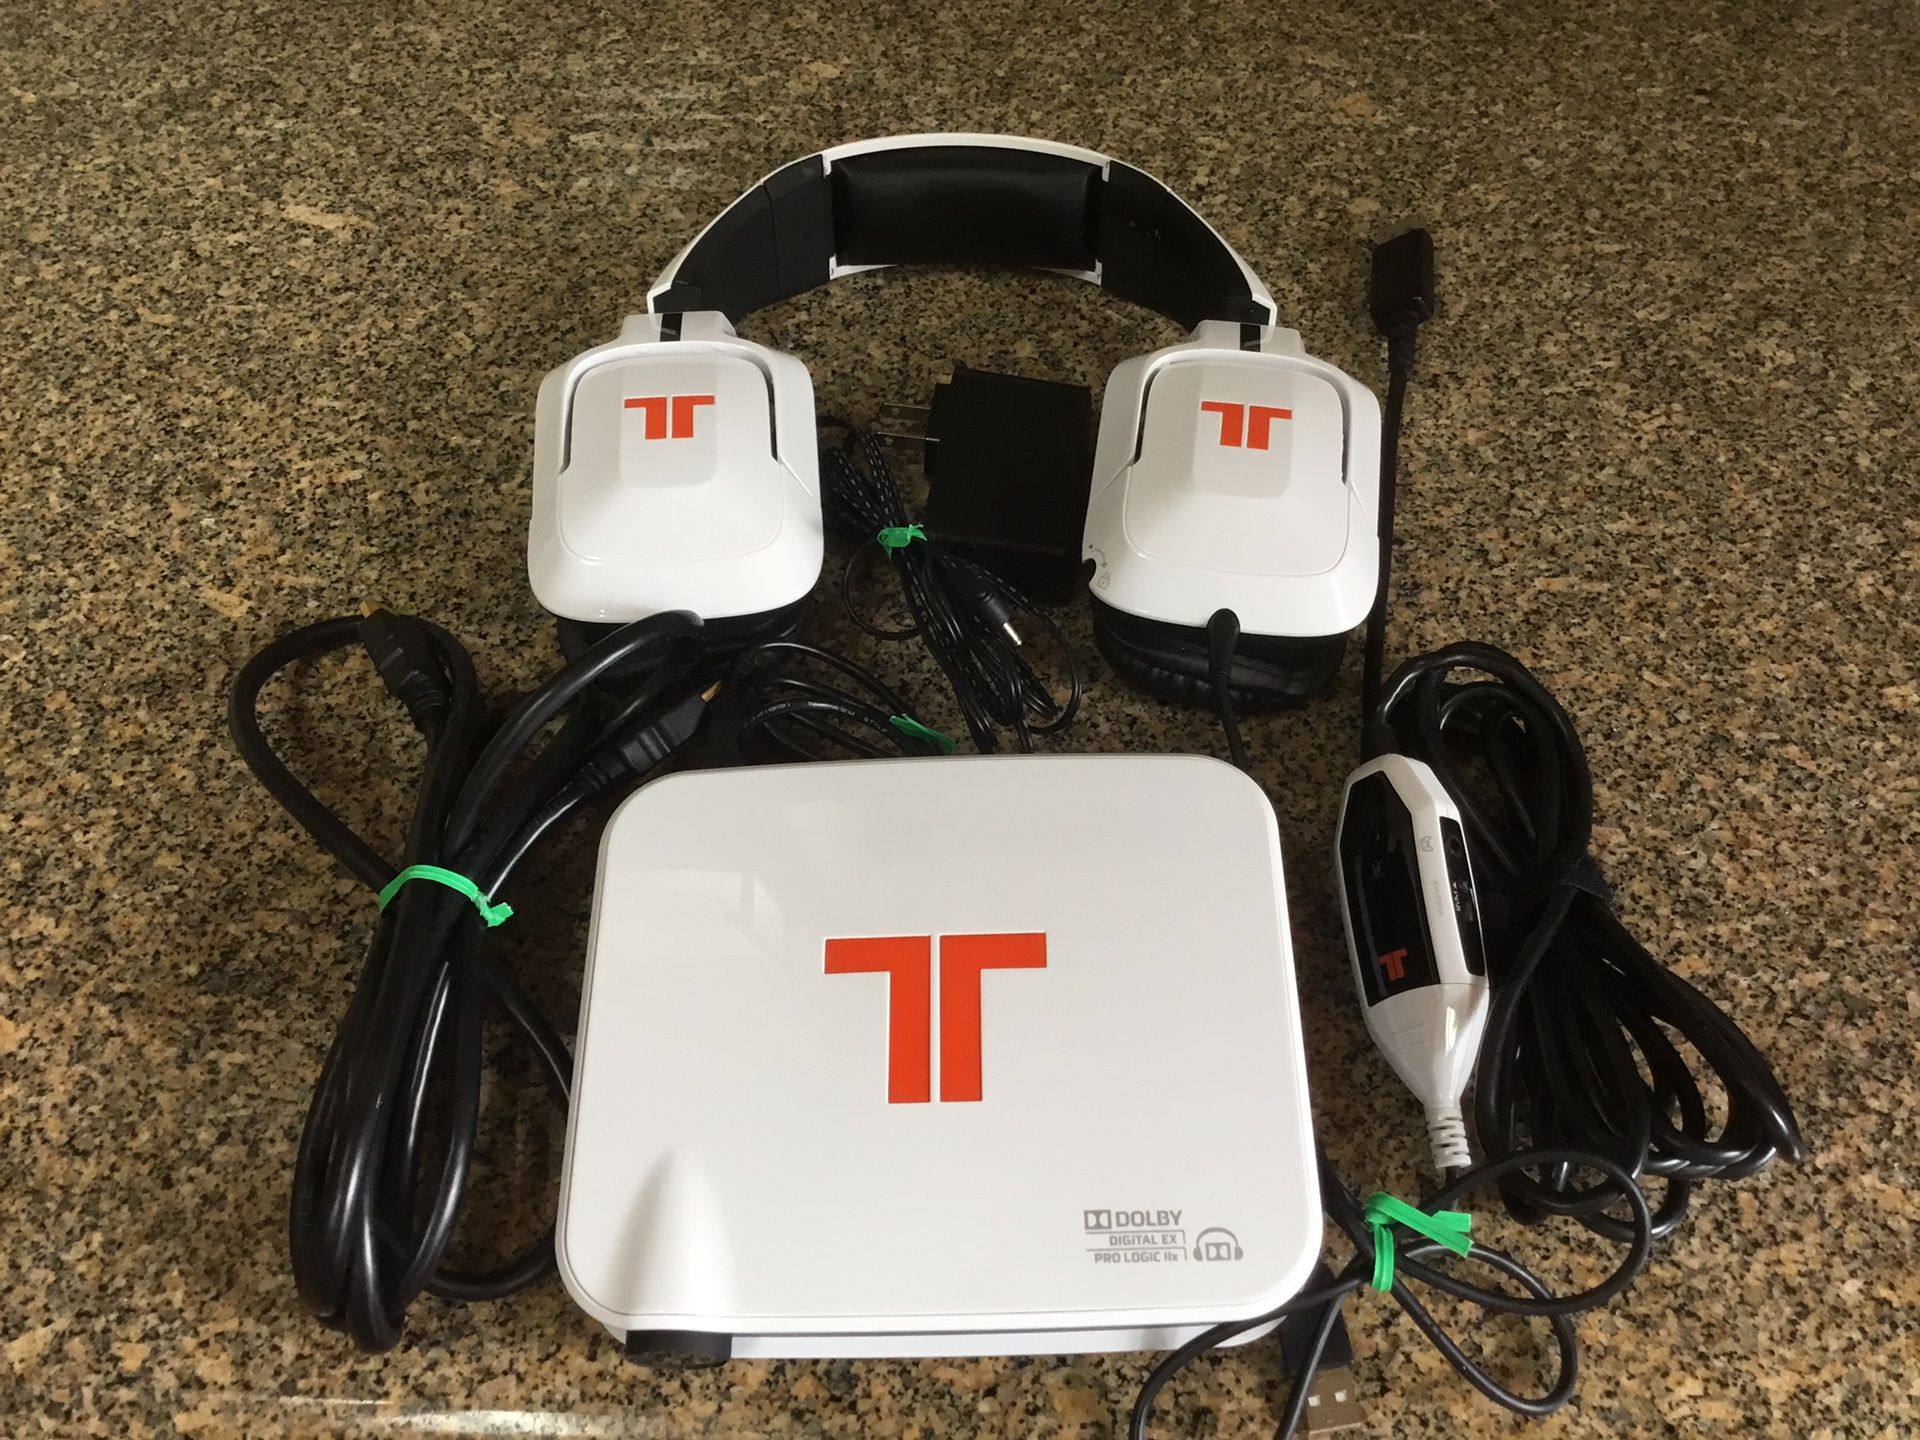 Triton 90203 Gaming Console/ Headphones